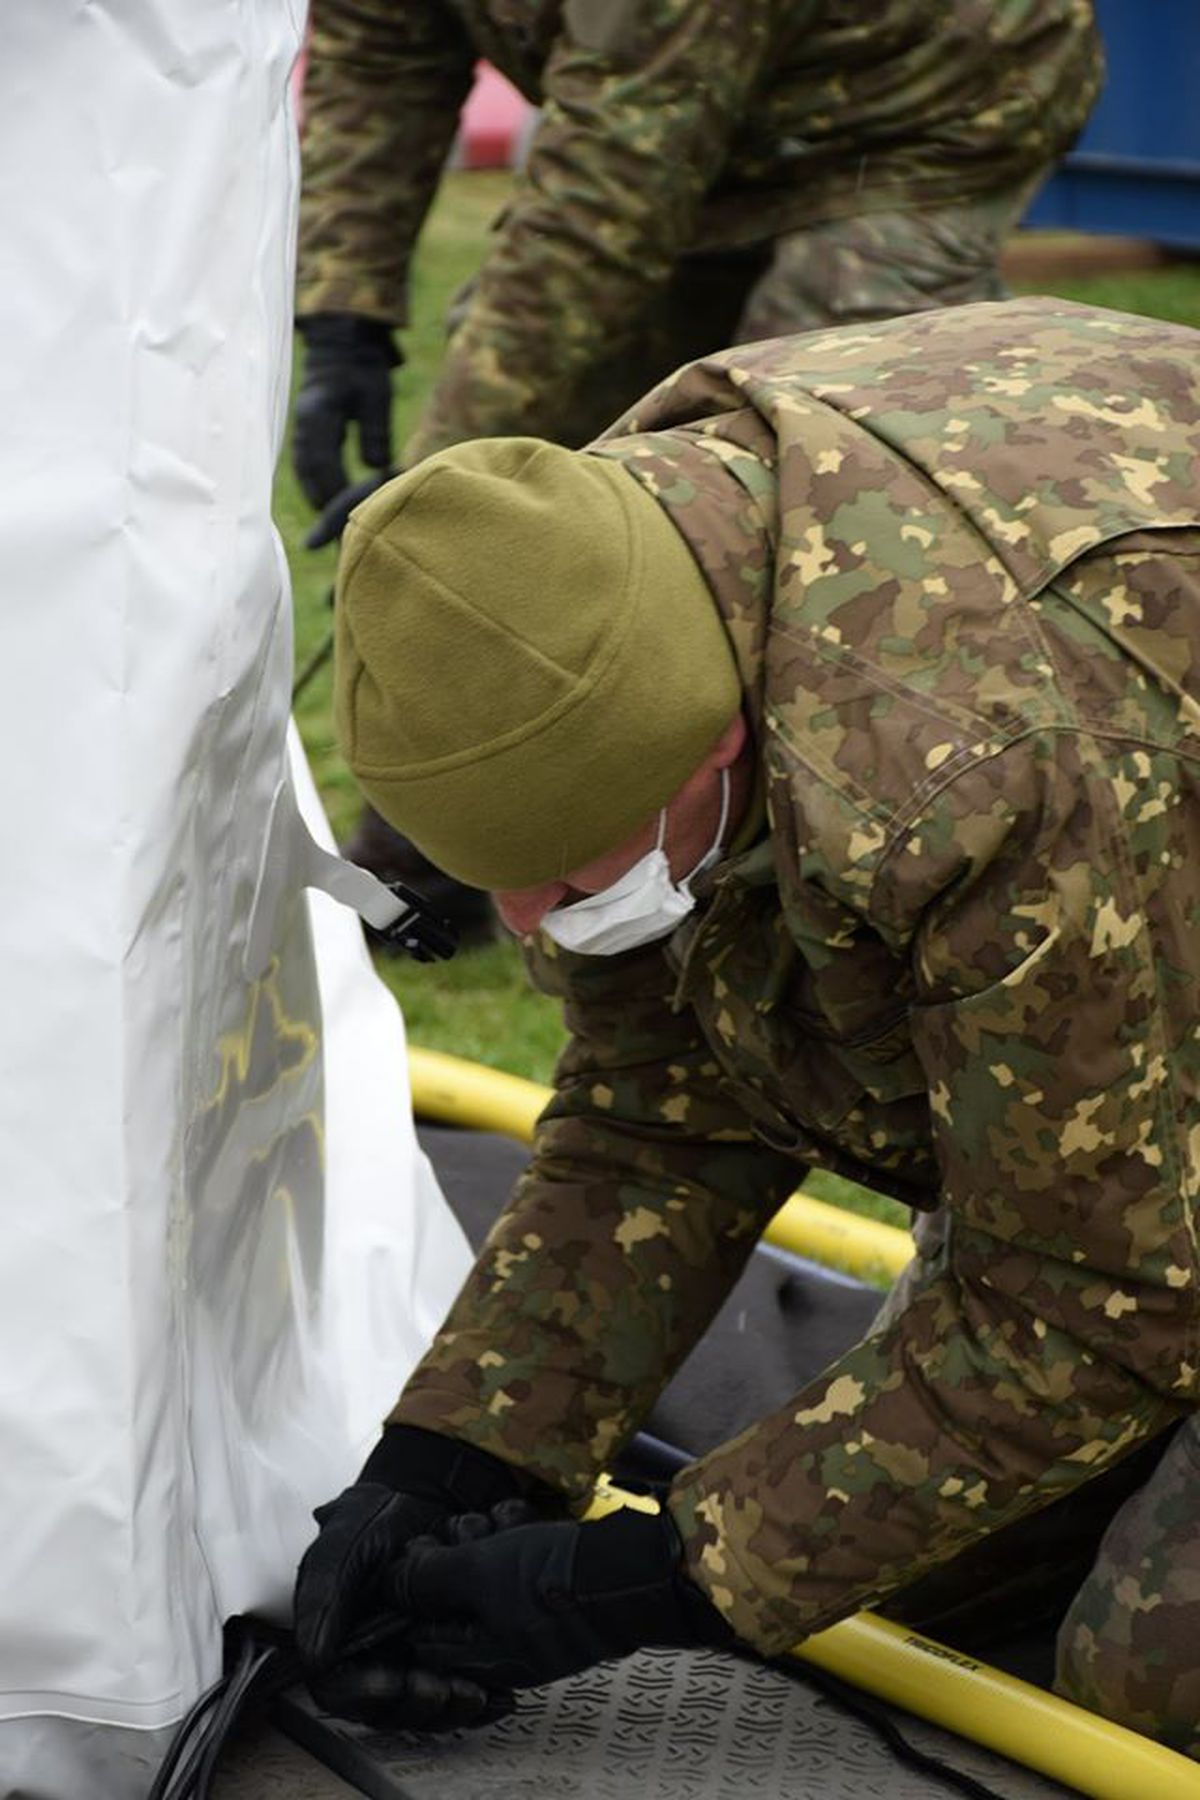 VIDEO Armata a intrat pe stadion la Constanța » Arena, transformată de urgență în spital modular pentru COVID-19